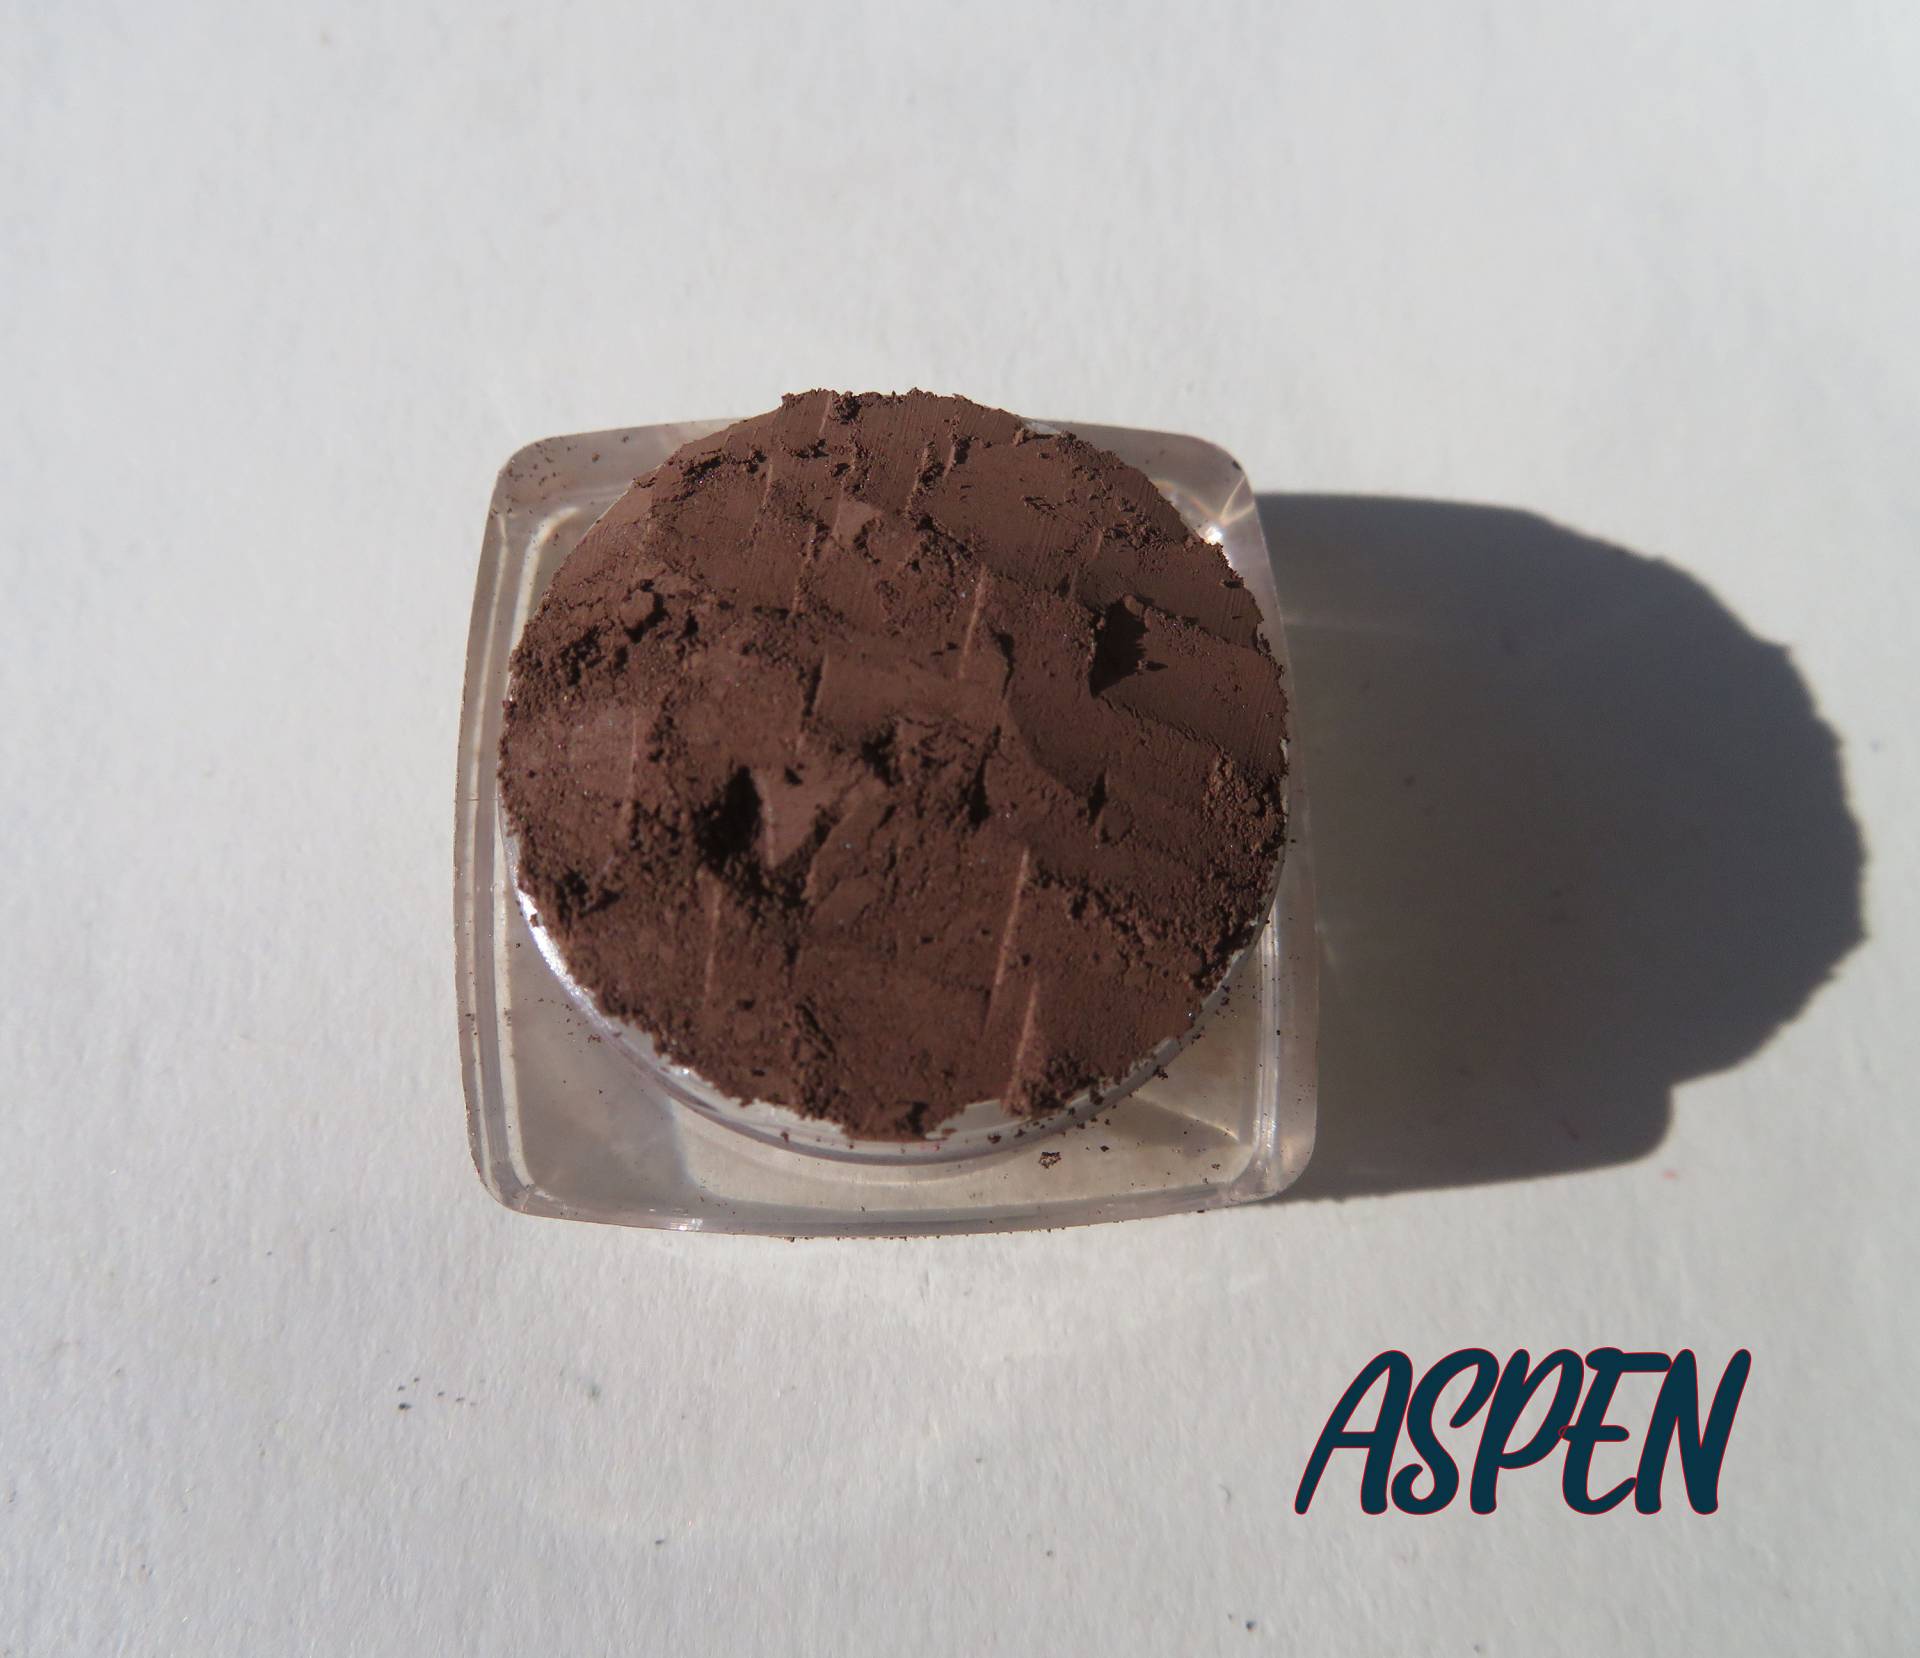 Aspen - Titanium Dioxide Free Matte Dunkelbrauner Mineral Lidschatten, Lose Pigmente Vegan Cruelty-Free, Make Up Lidschatten von kmms